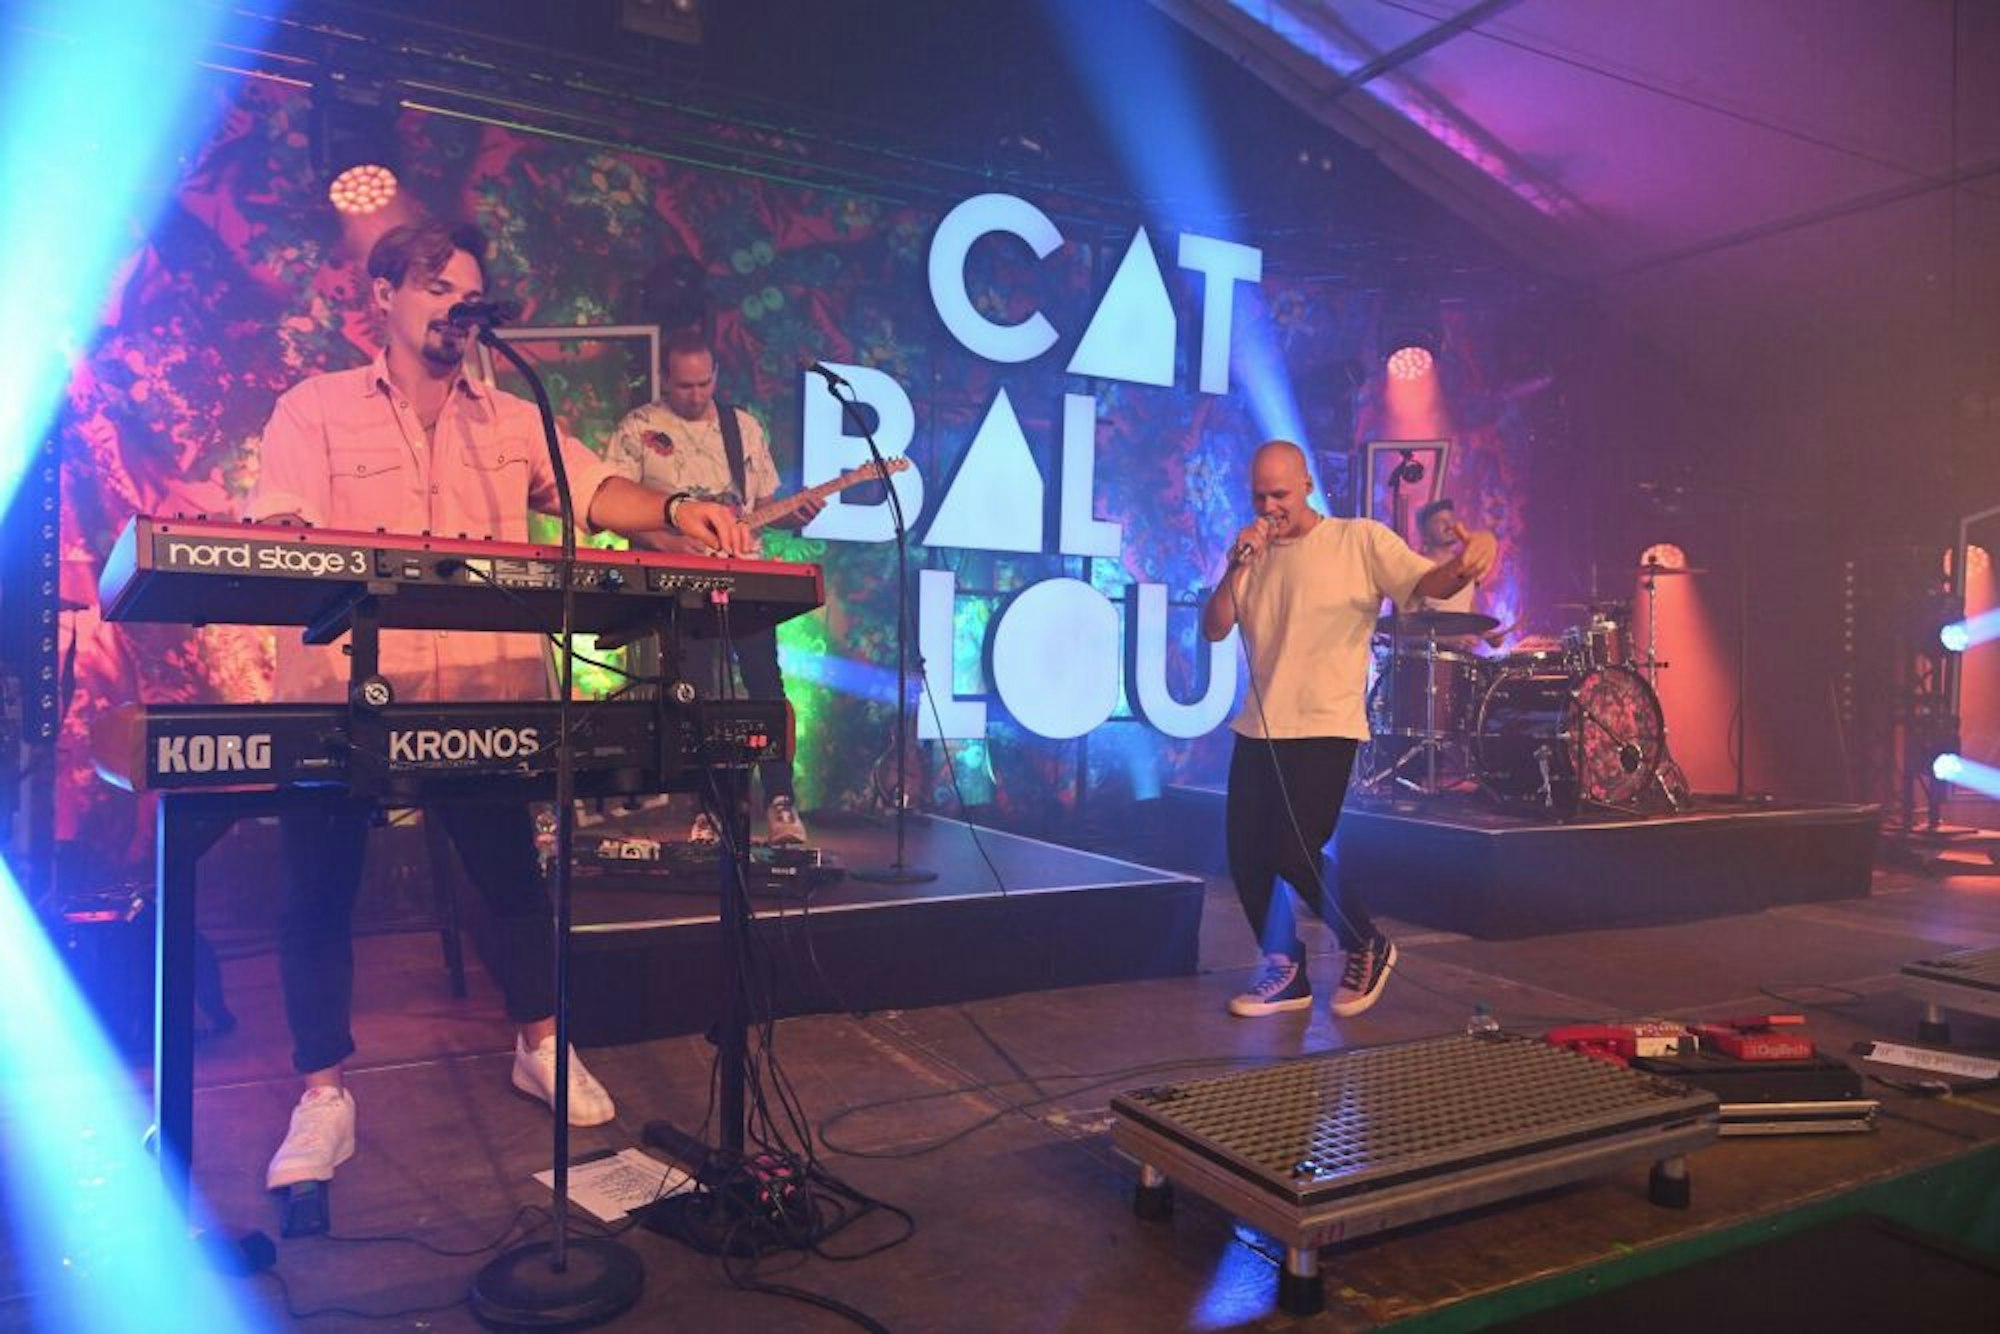 Vor 1700 begeisterten Besuchen spielte am Freitagabend die Gladbacher Band Cat Ballou.